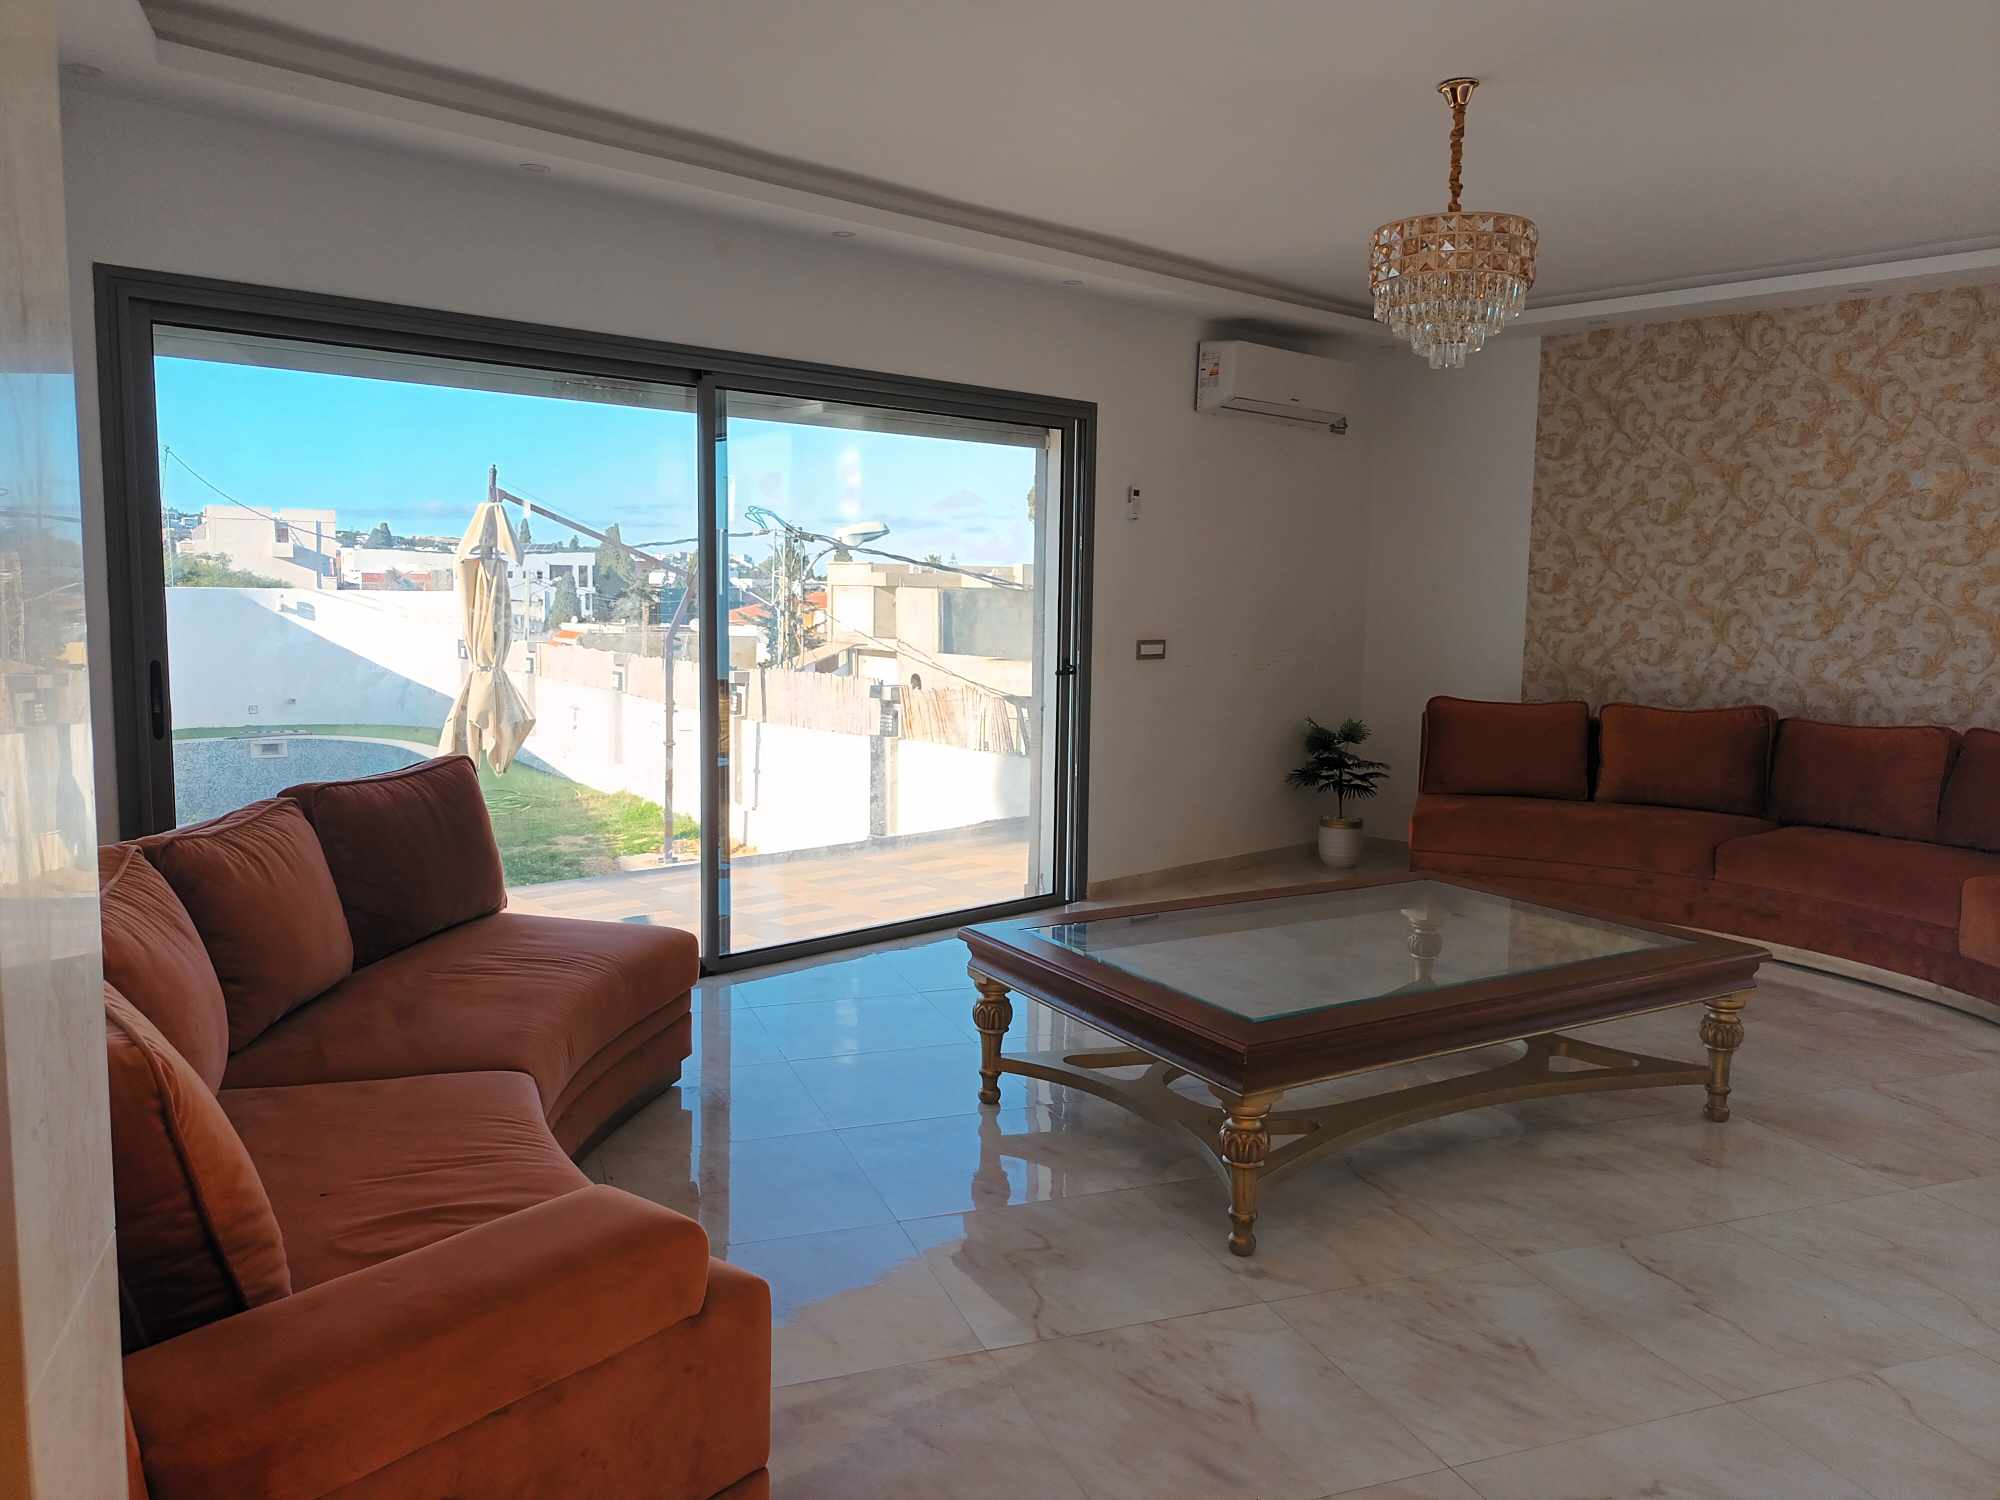 Bizerte Nord Bizerte Location vacances Maisons Luxieuse villa avec piscine  corniche bizerte